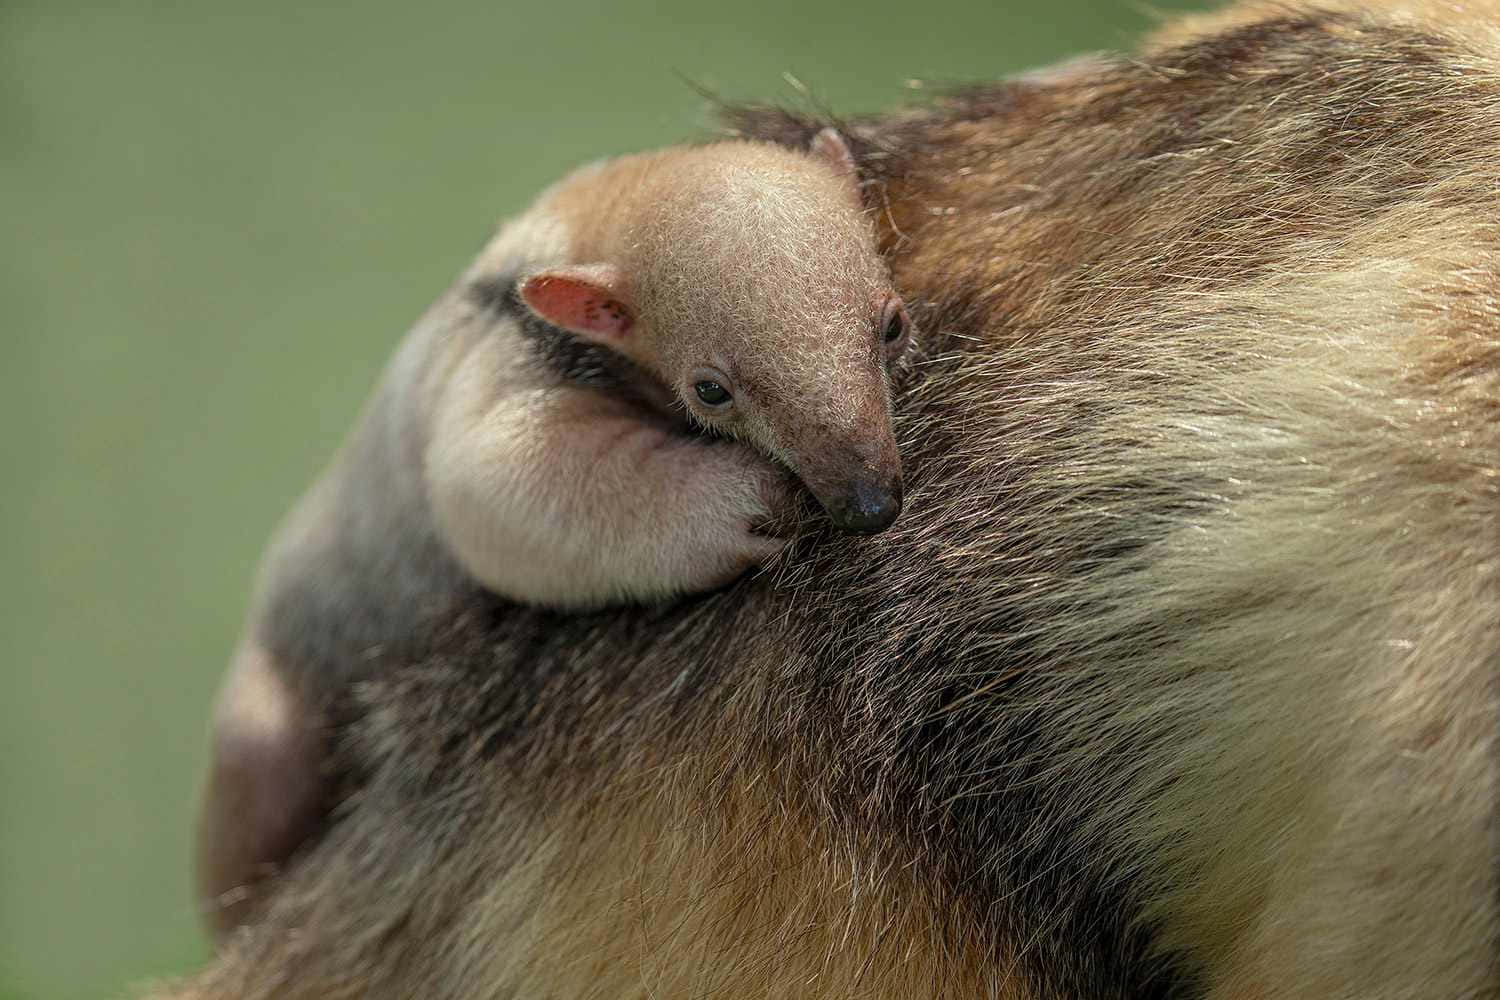 Baby Anteater Restingon Mother Wallpaper